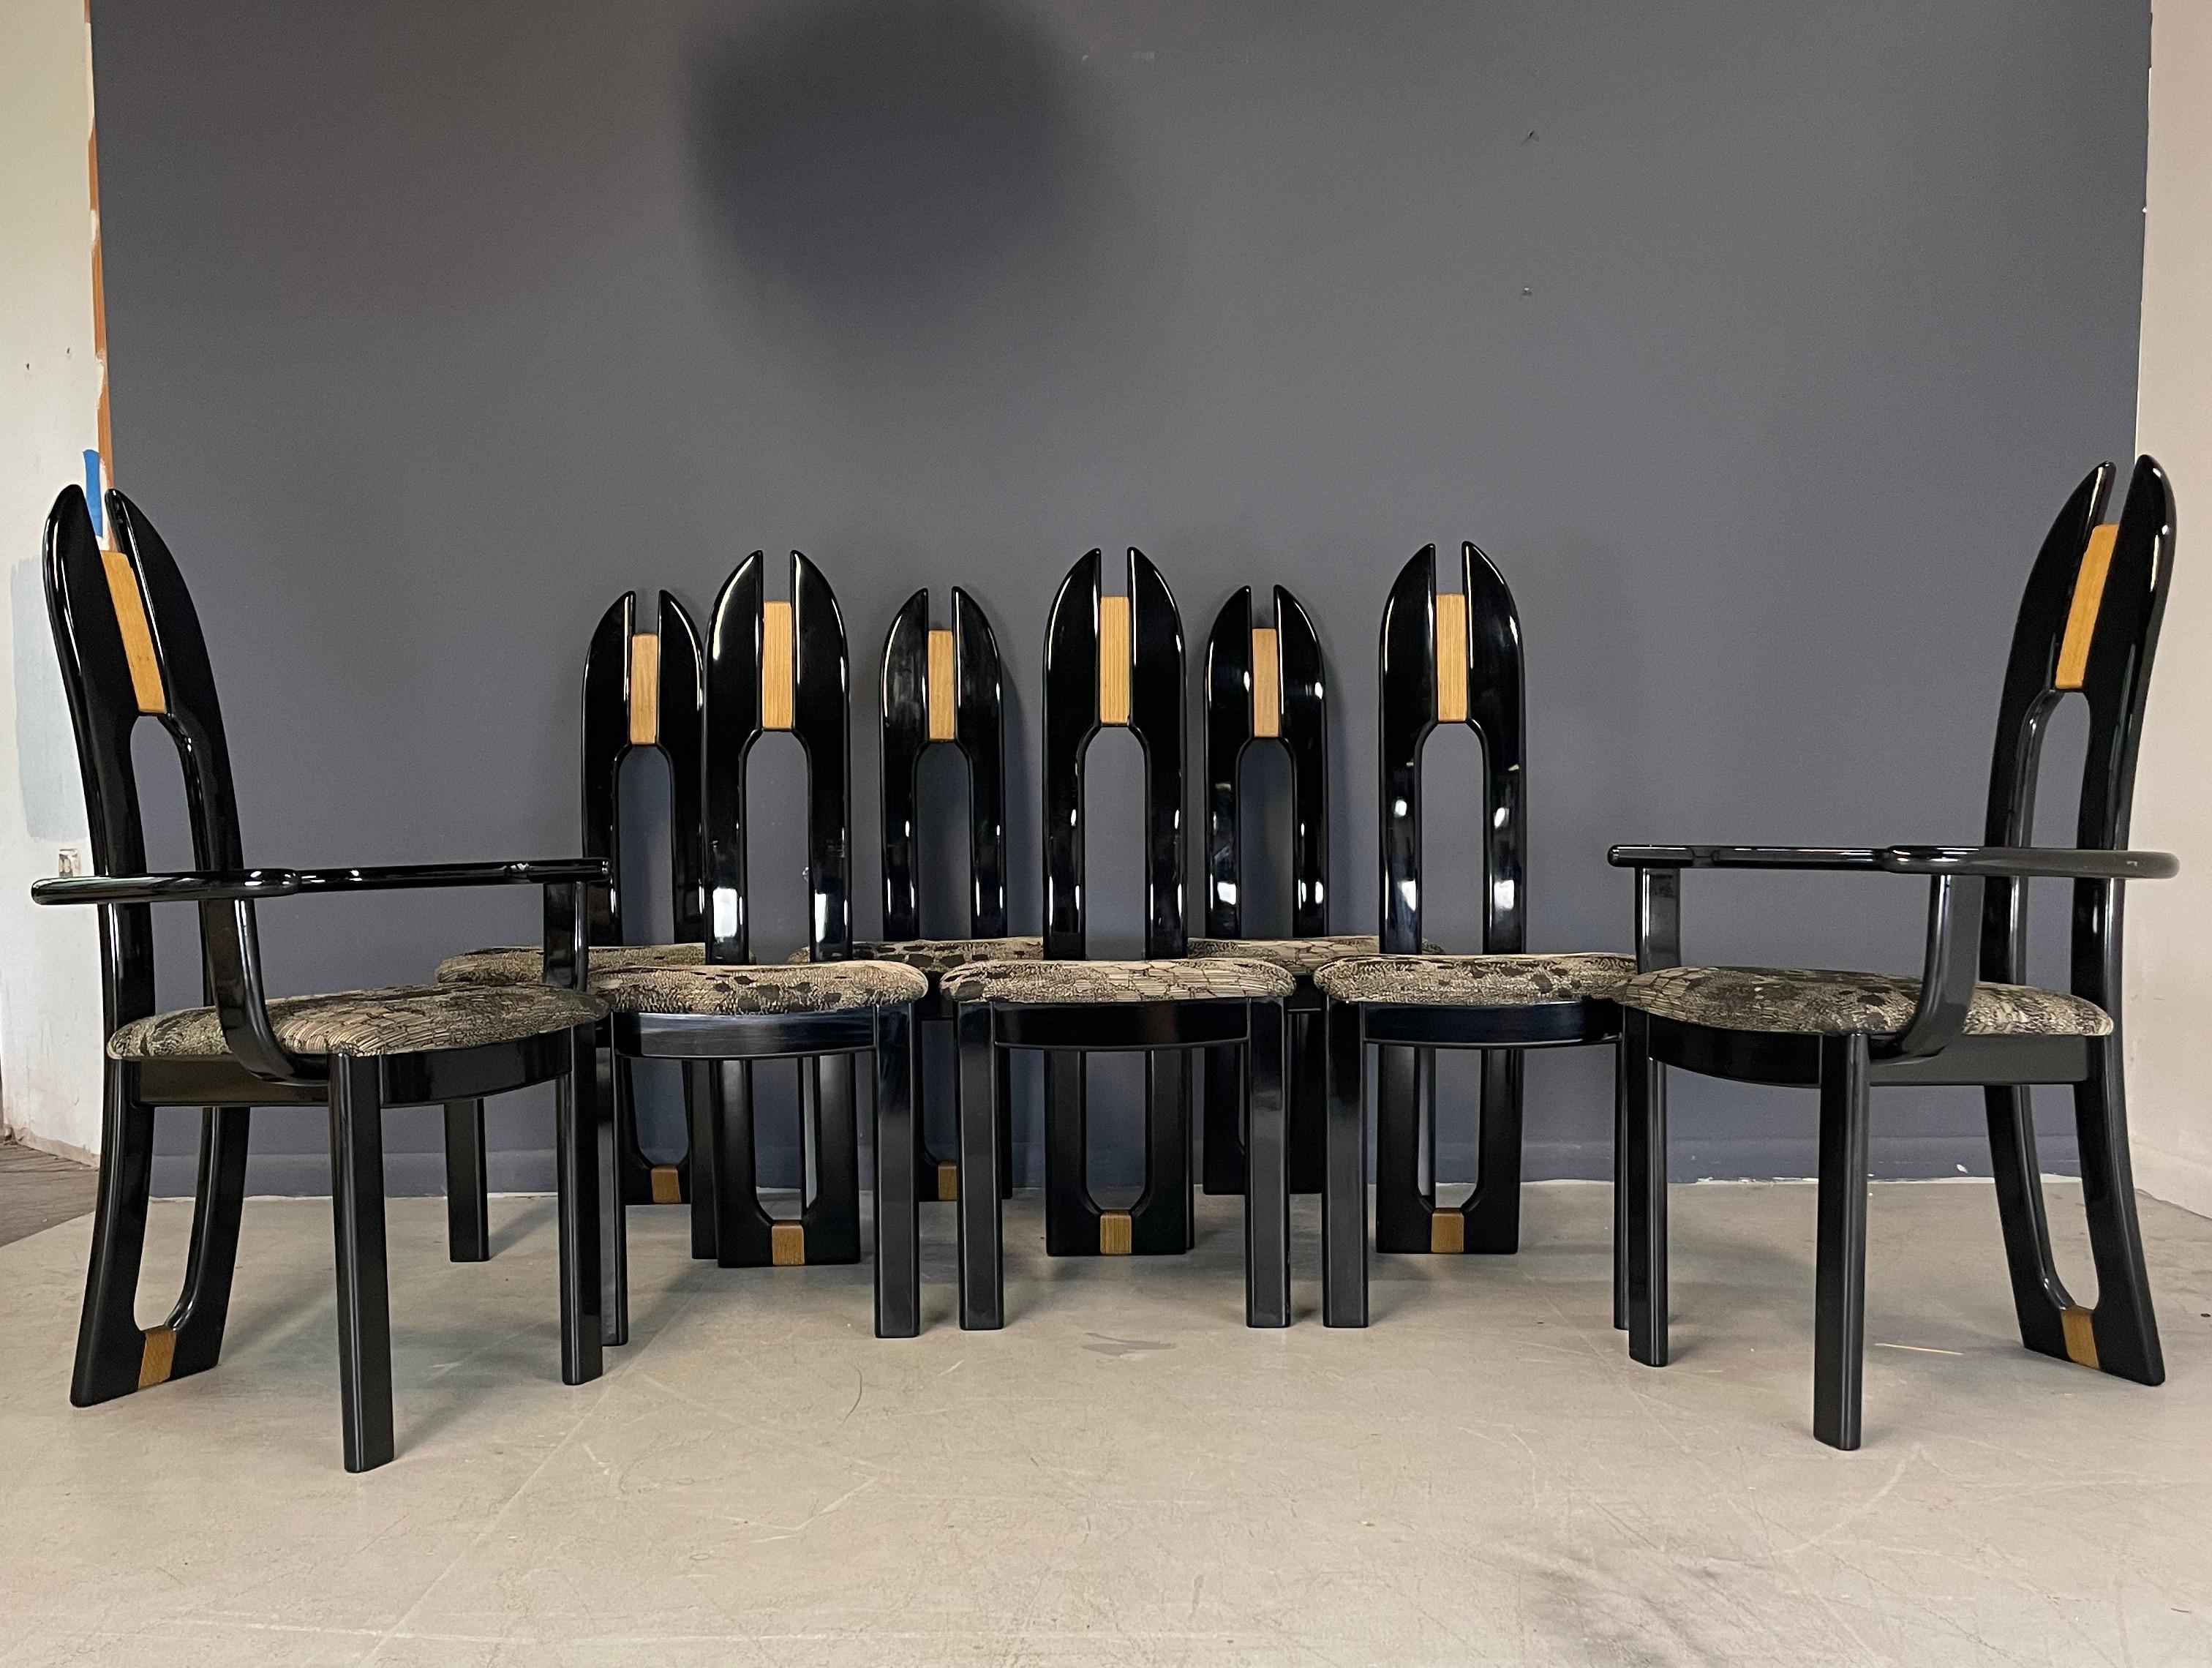 Chaises de salle à manger modernes d'avant-garde par Ello avec un design quintessentiel des années 1980. Ils présentent une forme sculpturale et des sièges rembourrés dans différentes couleurs pastel. Conçu par Pietro Costantini et fabriqué en